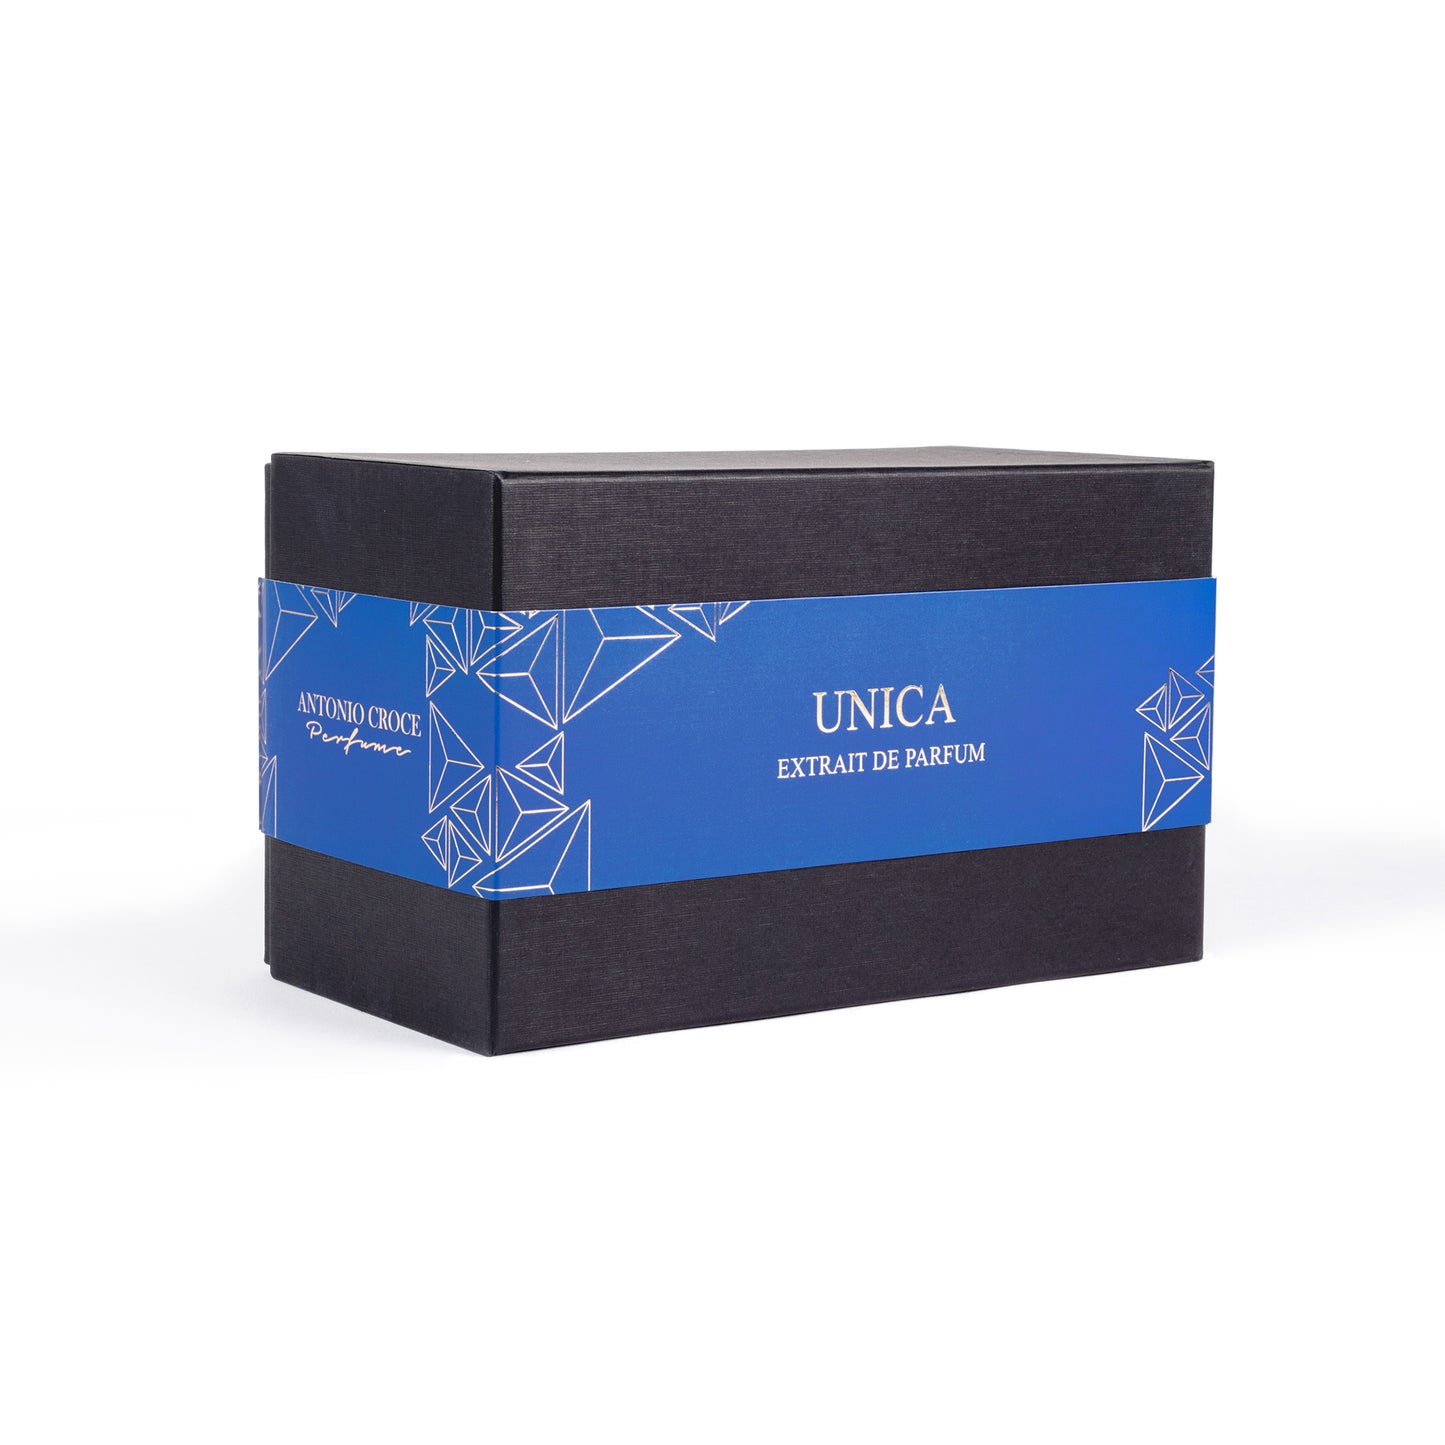 UNICA - 3.4 oz Eau de Parfum